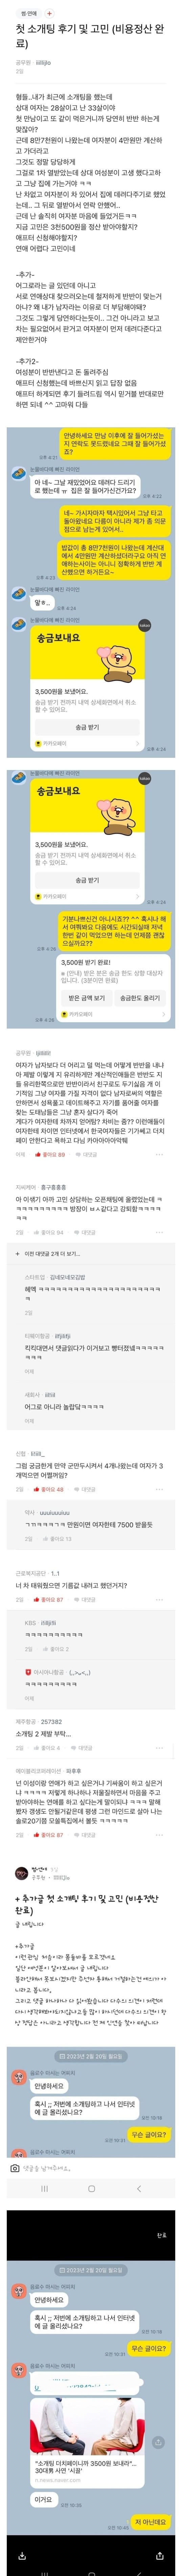 블라인드 소개팅 3500원남 후기.jpg